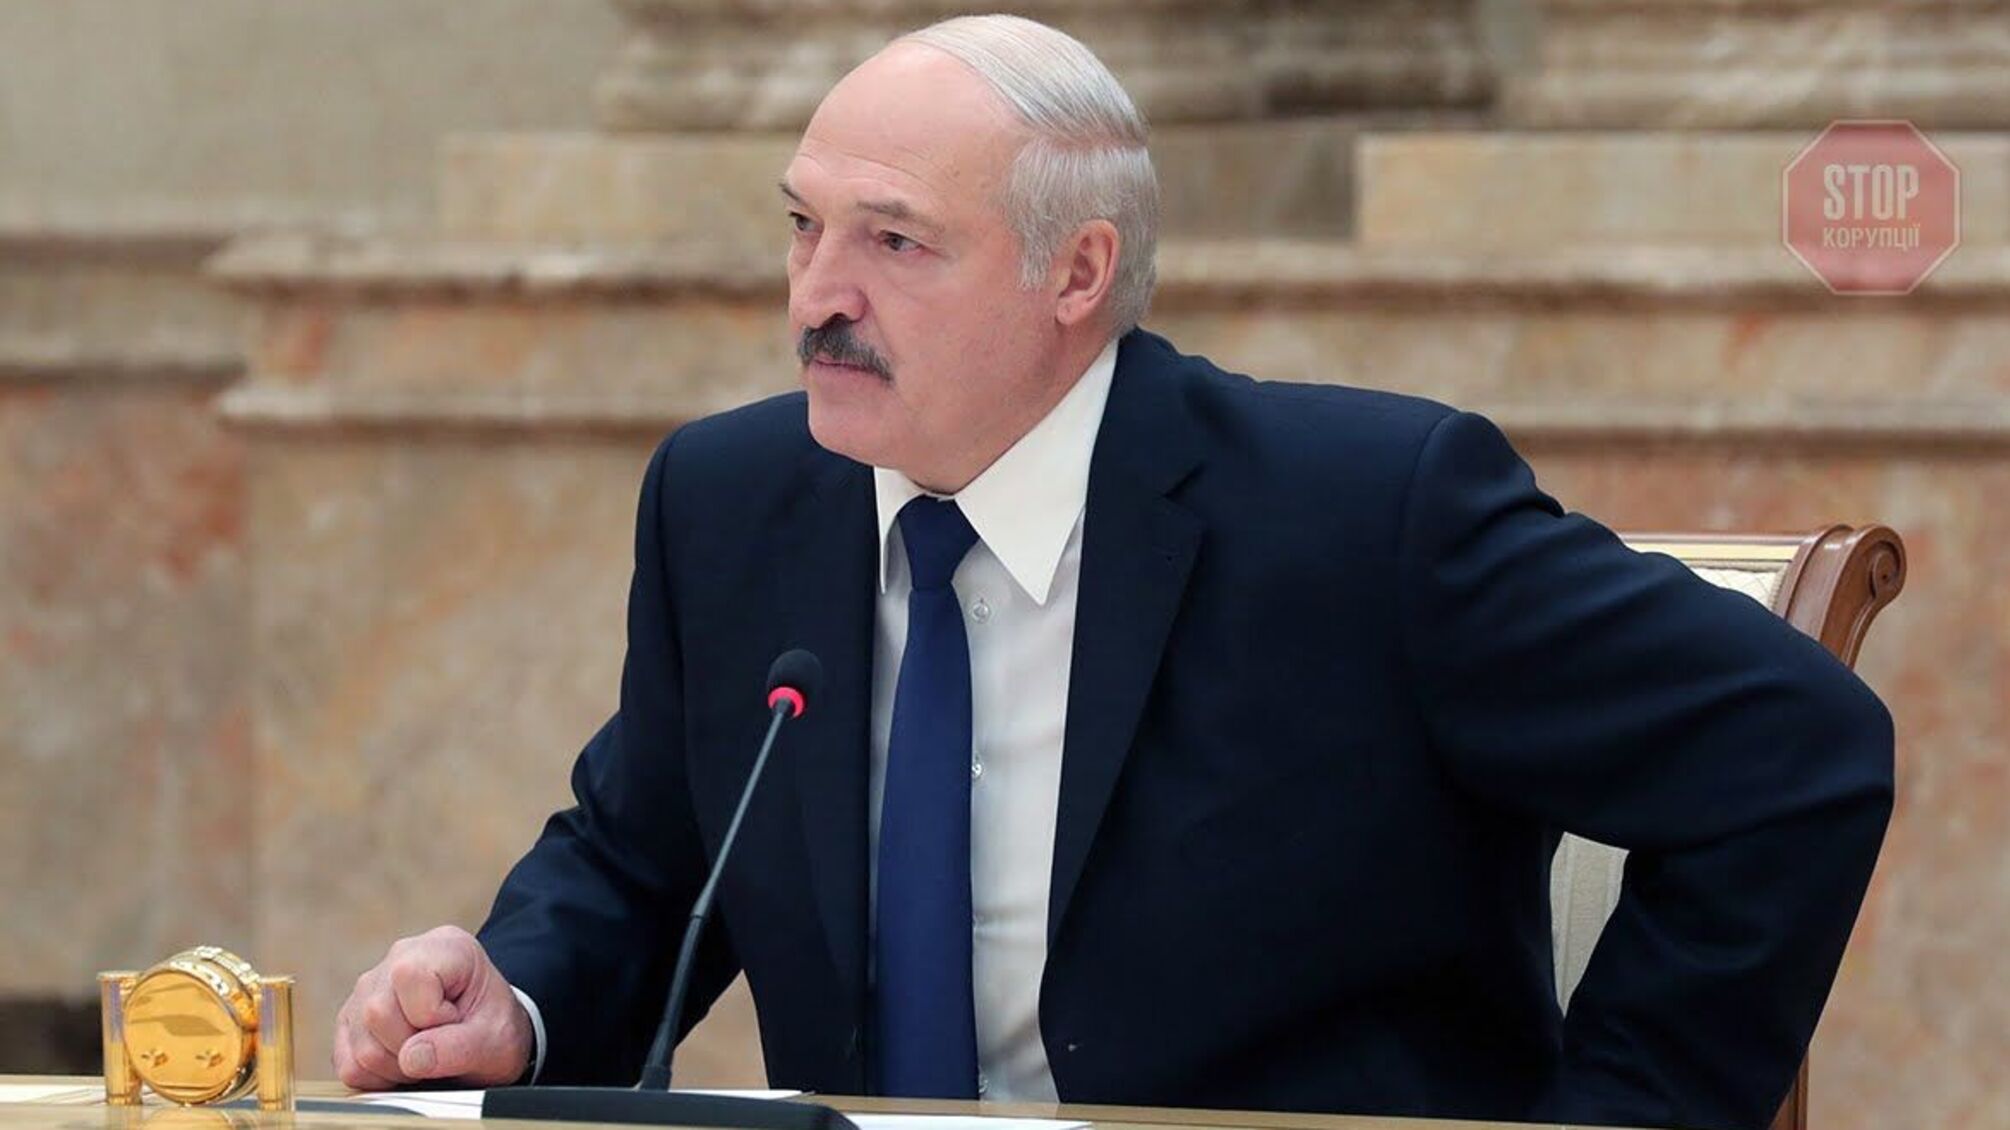 “Інформація не відповідає дійсності”: у США відреагували на обвинувачення в “замаху” на Лукашенка 